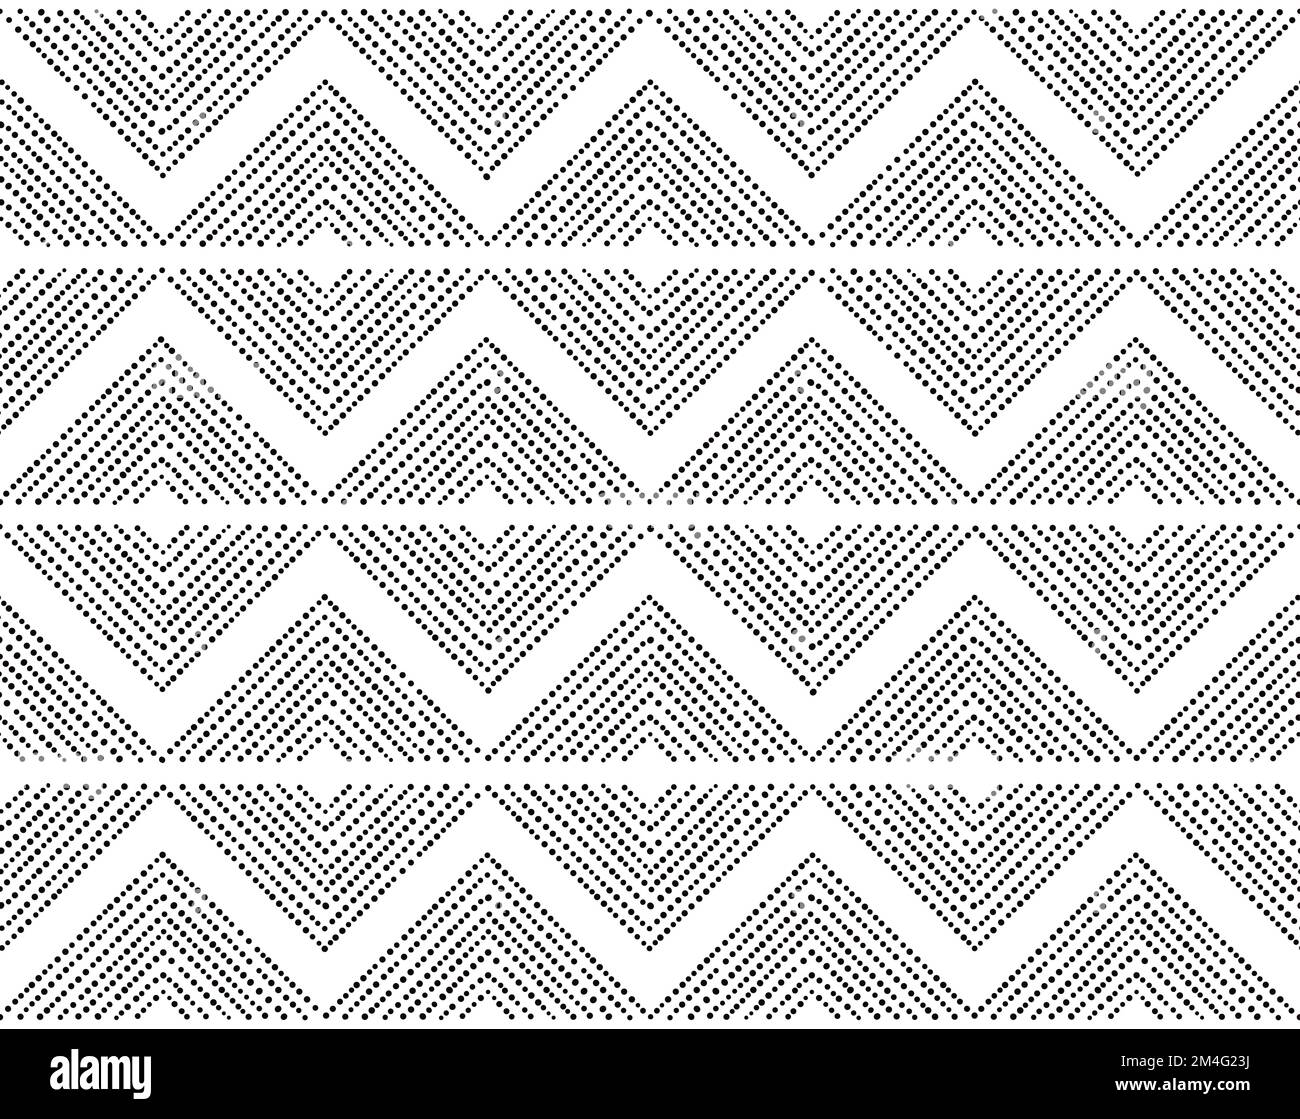 Poterie préhistorique la culture de Bell Beaker inspira un motif sans couture avec des points et des lignes inégales - l'art populaire, le design répétitif en noir et blanc Illustration de Vecteur